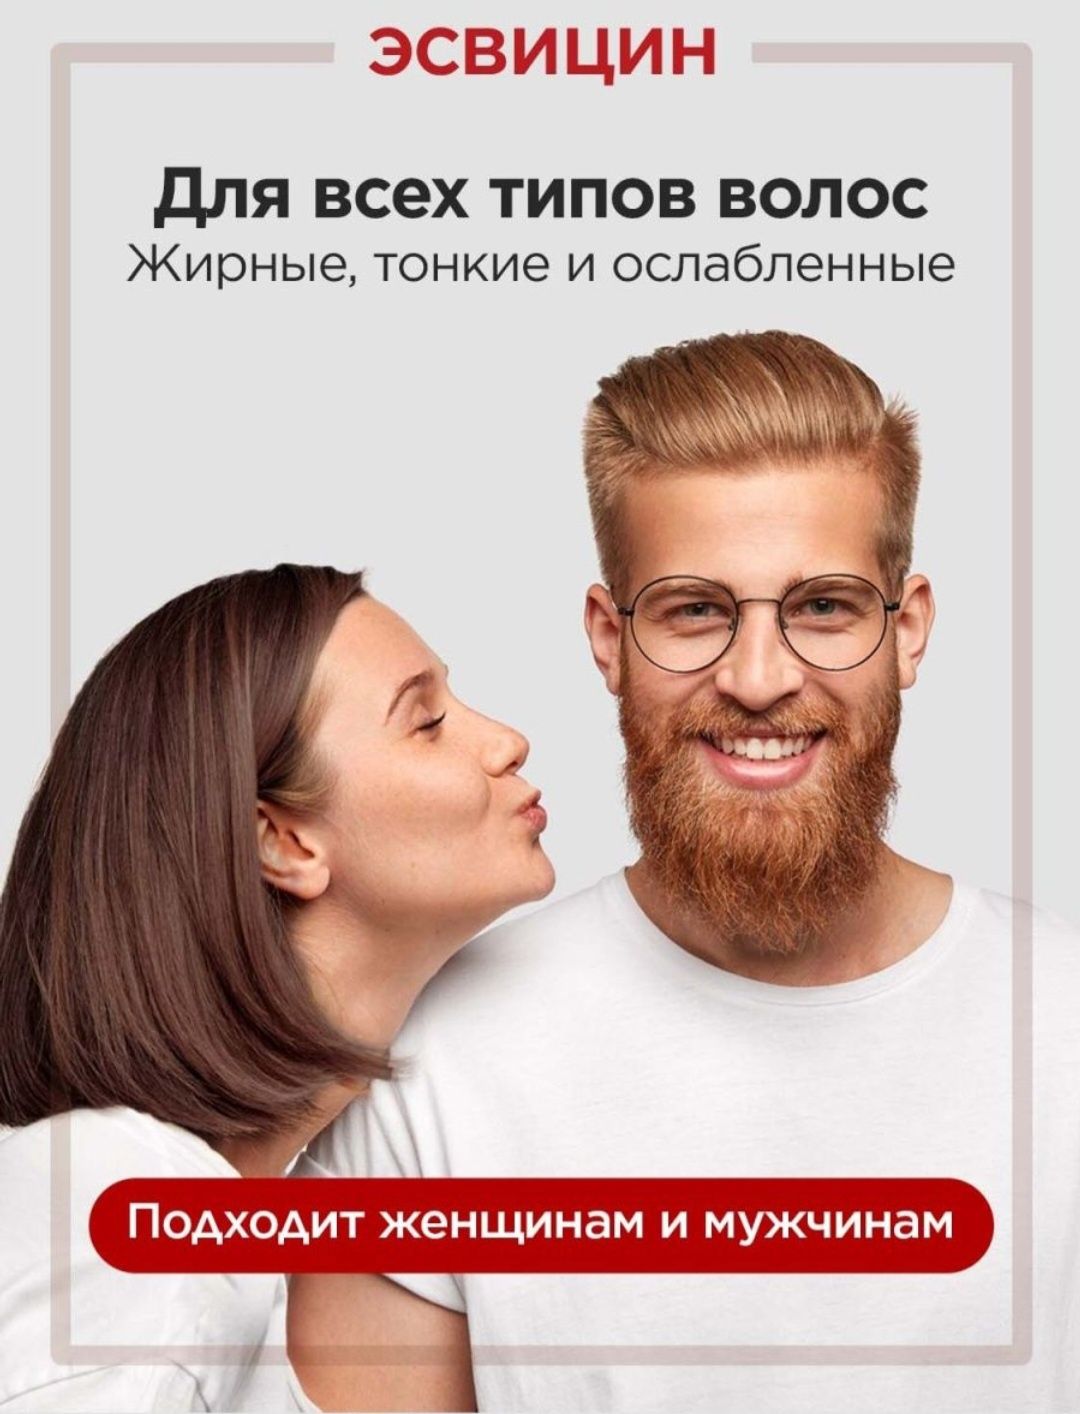 Российский продукт для ухода за волосами Эсвицин